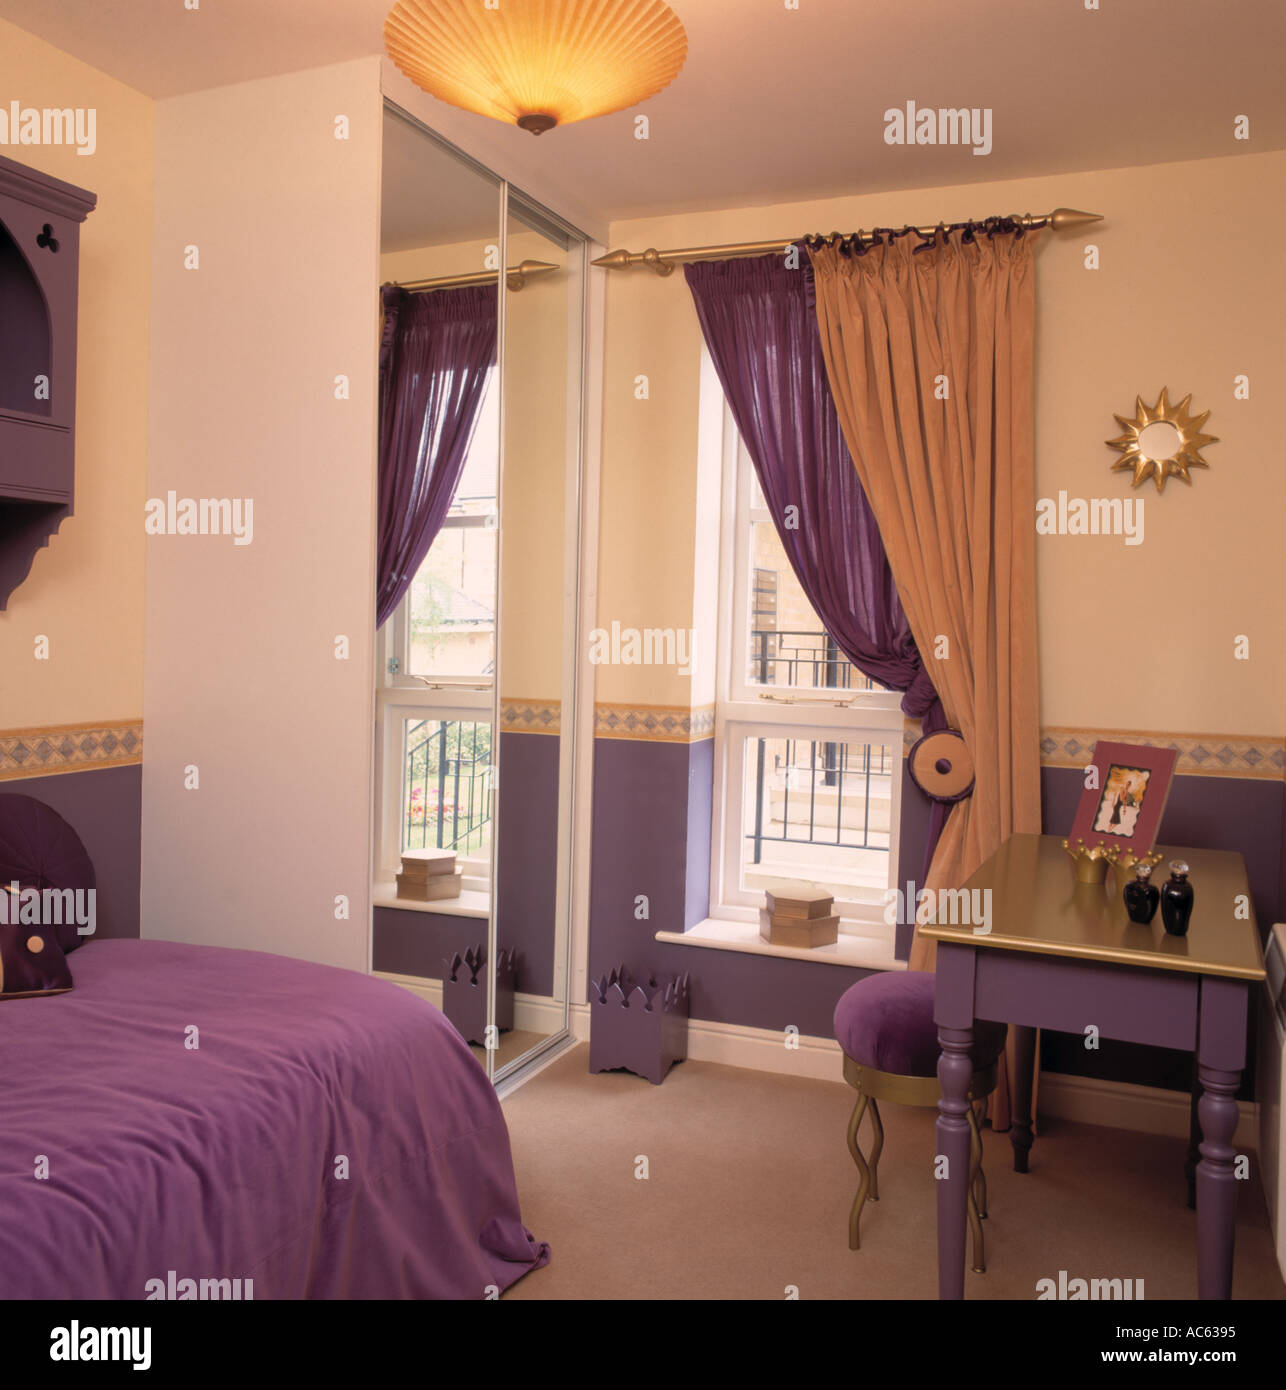 Violet et or à côté de la fenêtre à rideaux armoire équipée avec porte miroir dans l'appartement avec chambre à coucher couvre-lit pourpre Banque D'Images